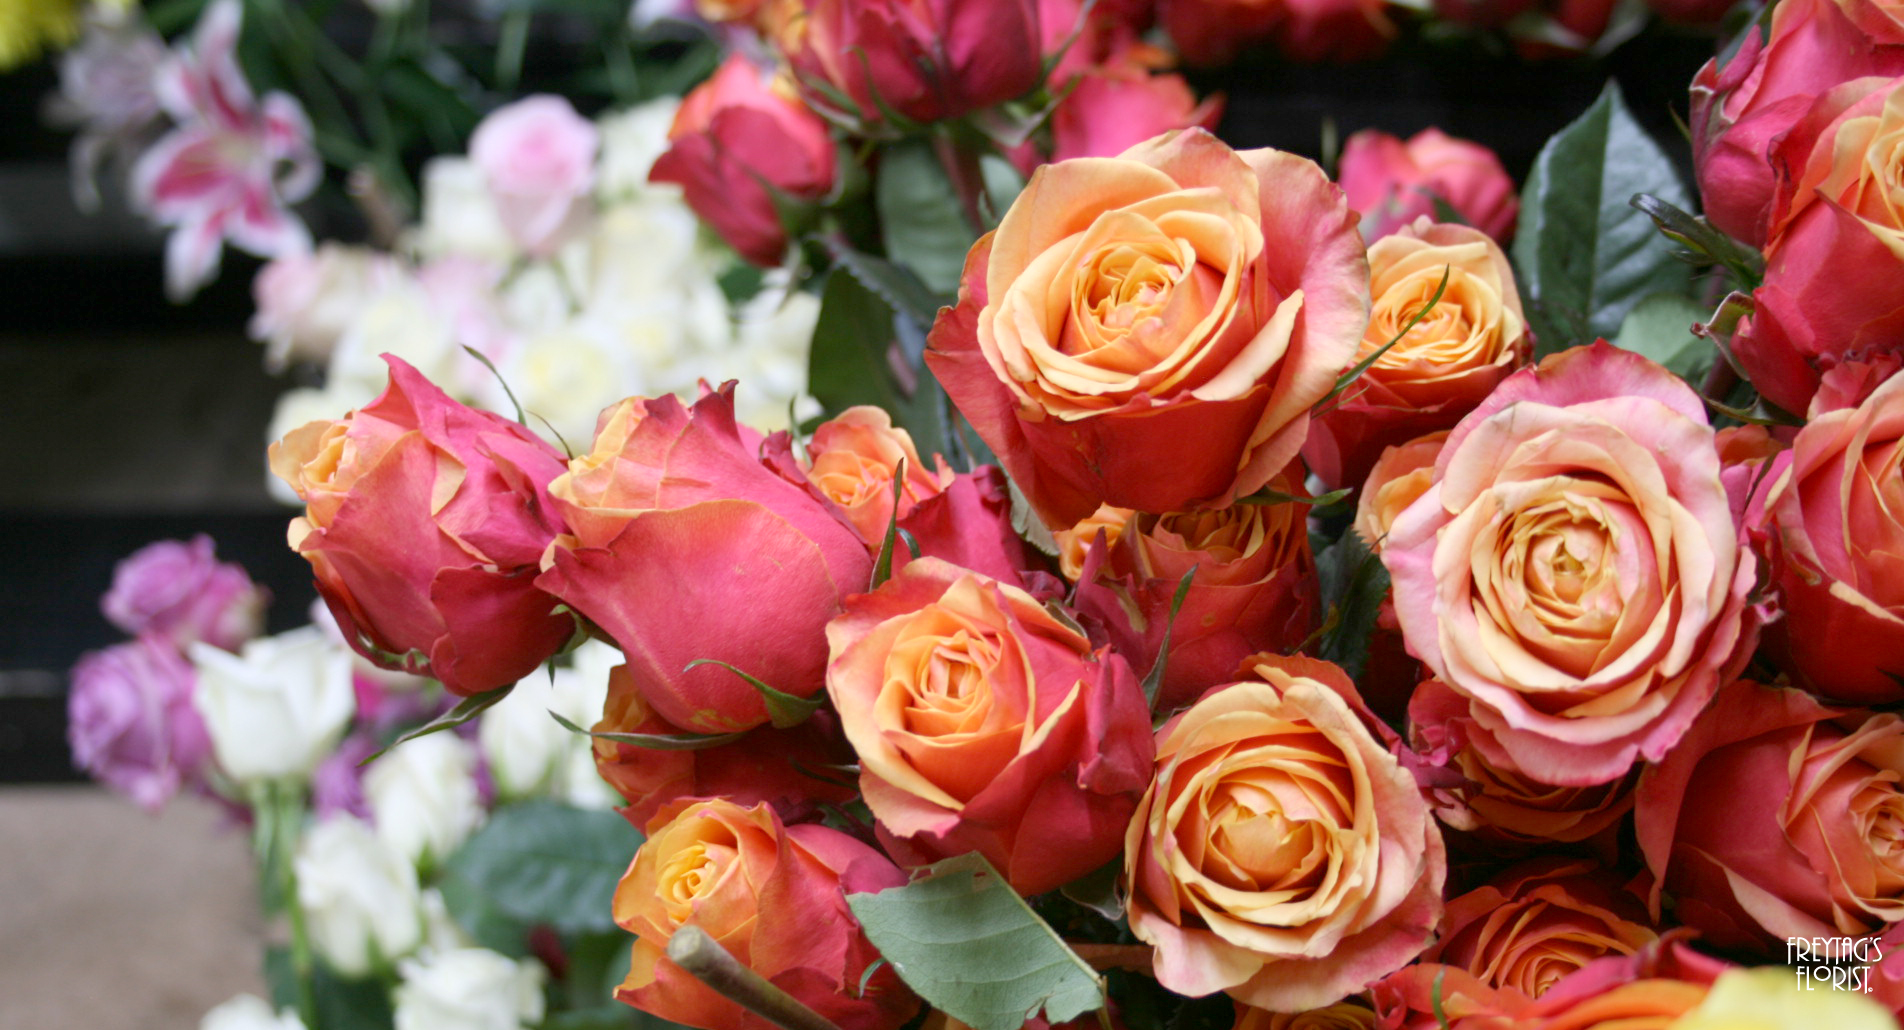 Roses-freytags-florist-austin-tx-copyright-2018